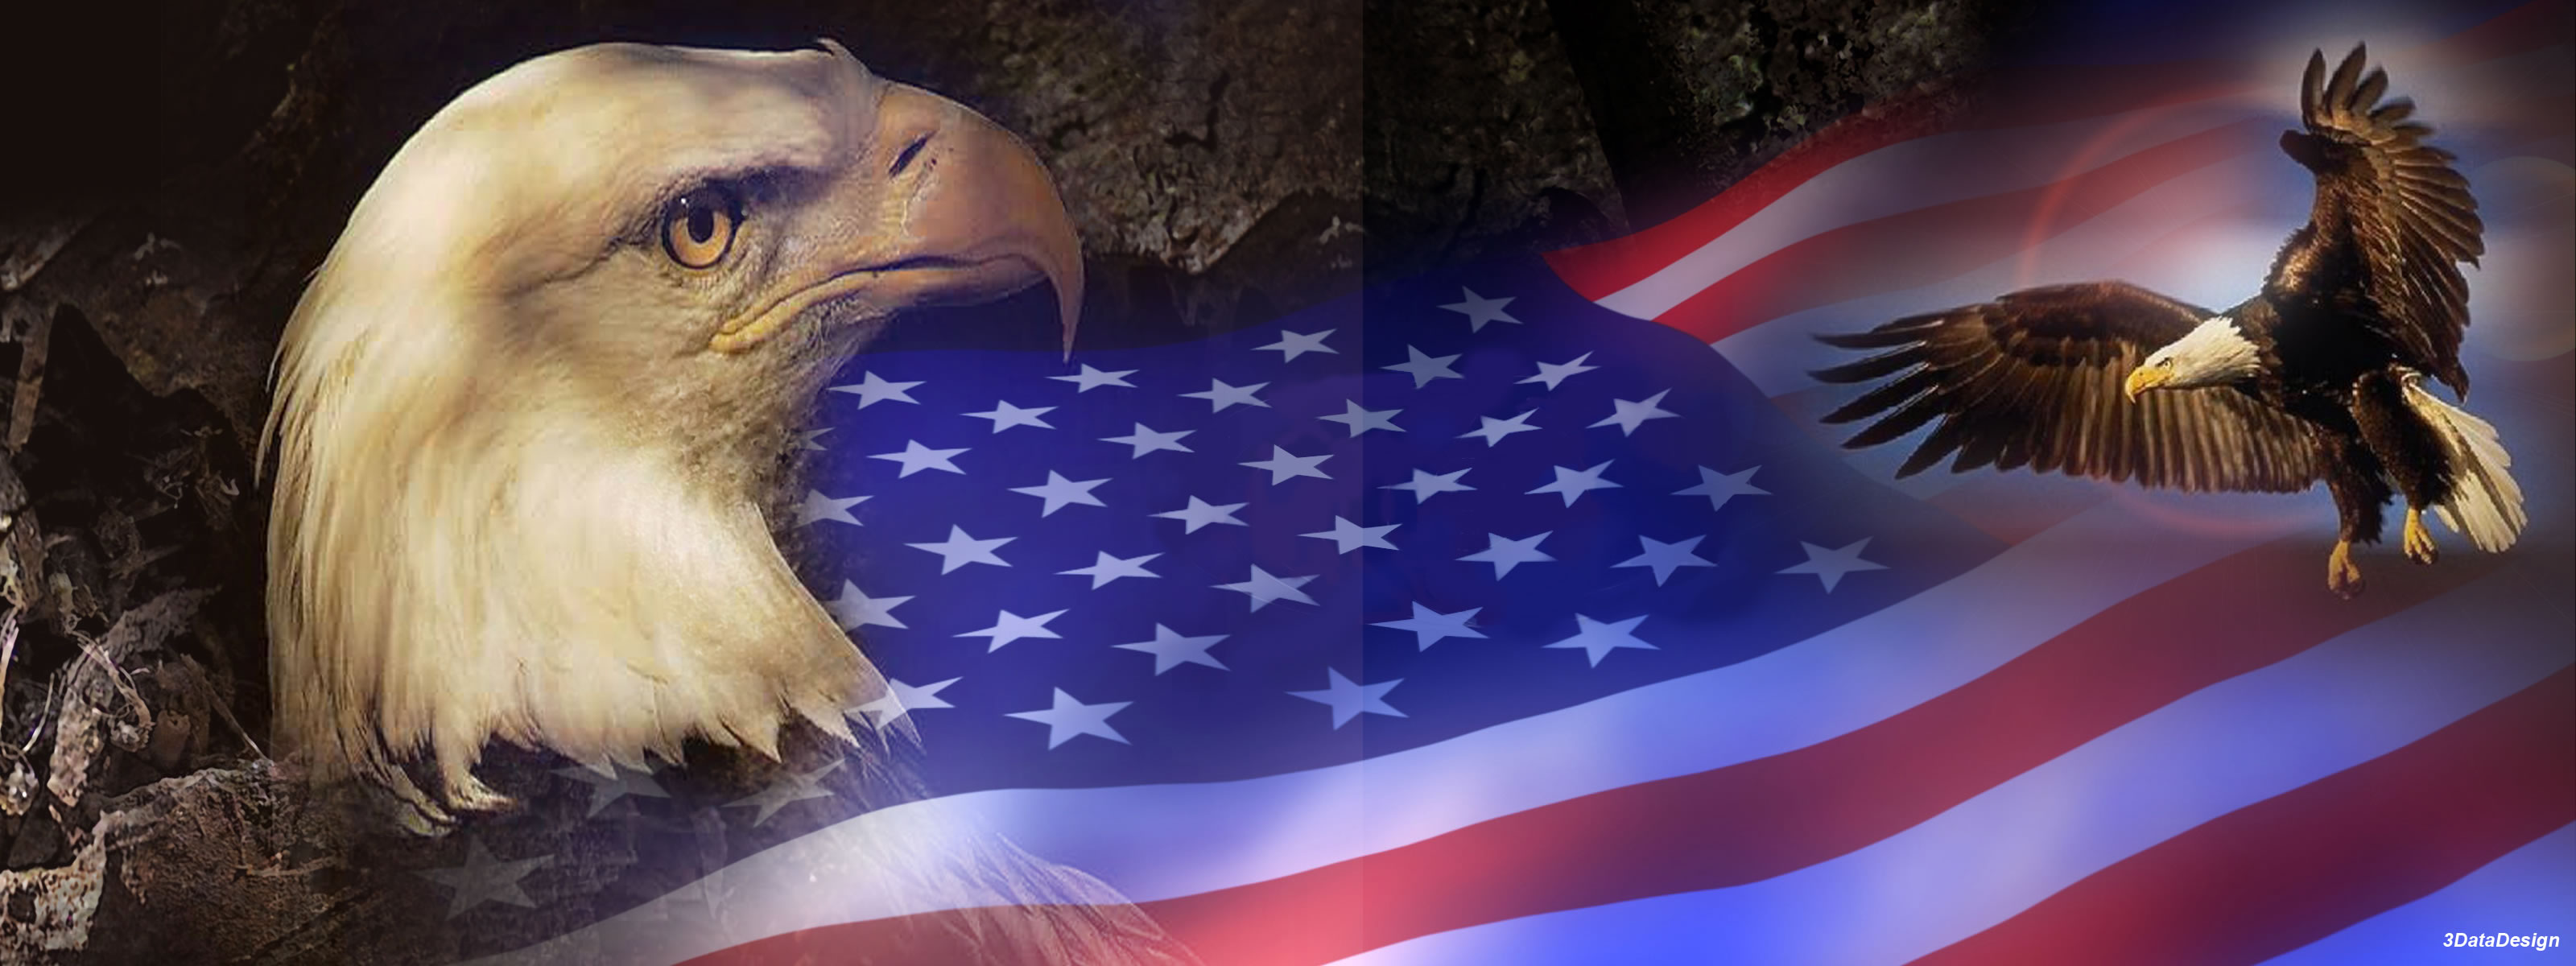 165029 скачать обои флаги, американский флаг, сделано человеком, птицы, орел - заставки и картинки бесплатно